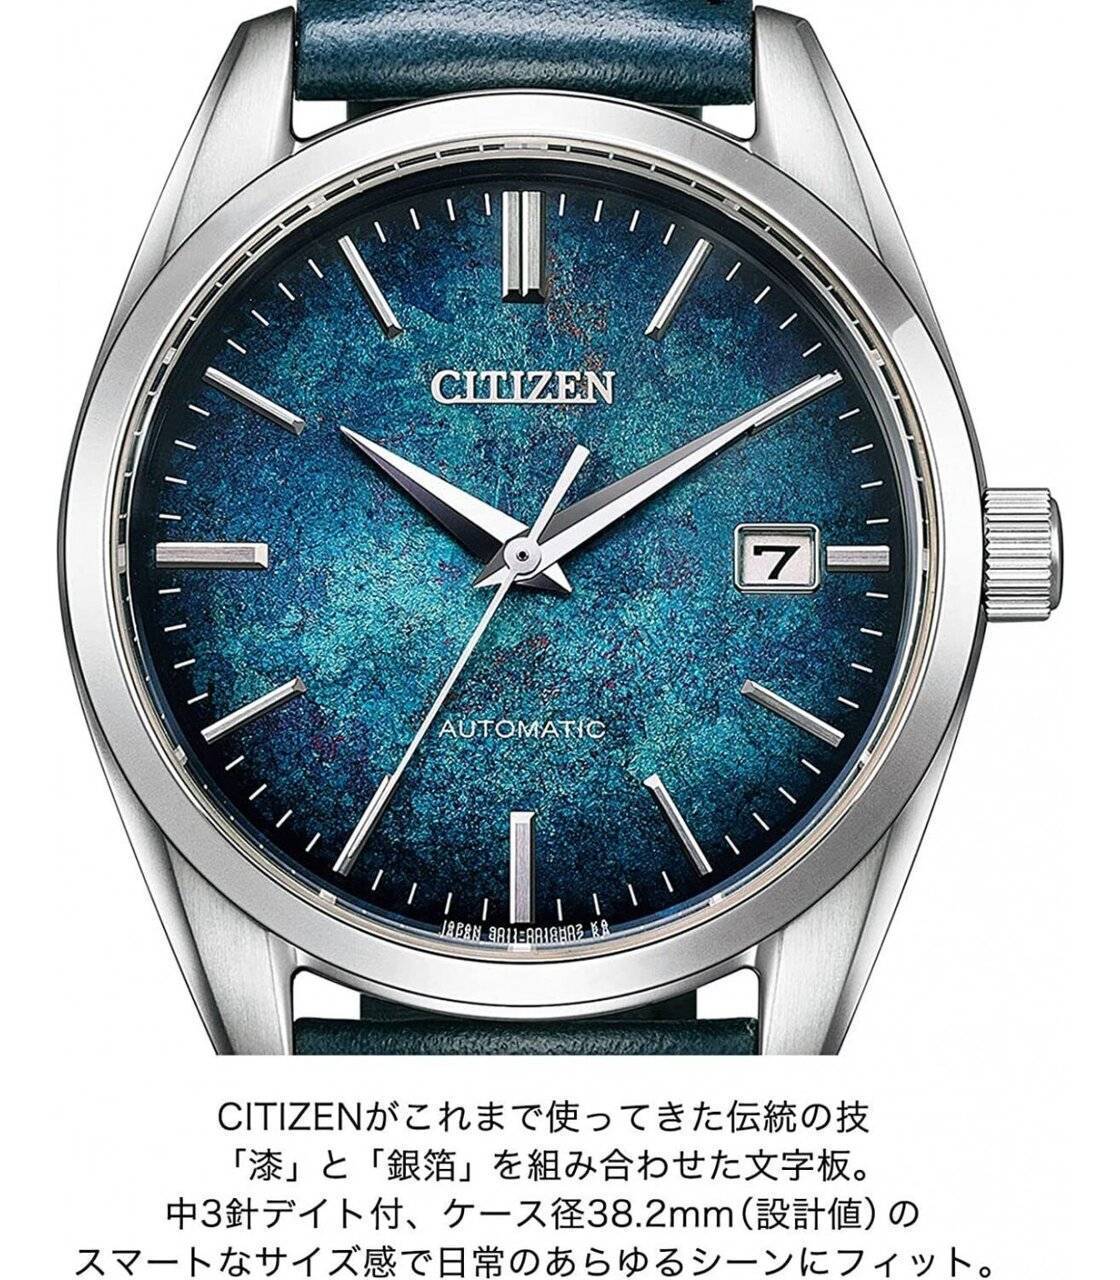 -reloj-automatico-hombre-citizen-nb1060-12l-jdm-382mm-lacado-tradicional-japones.jpg